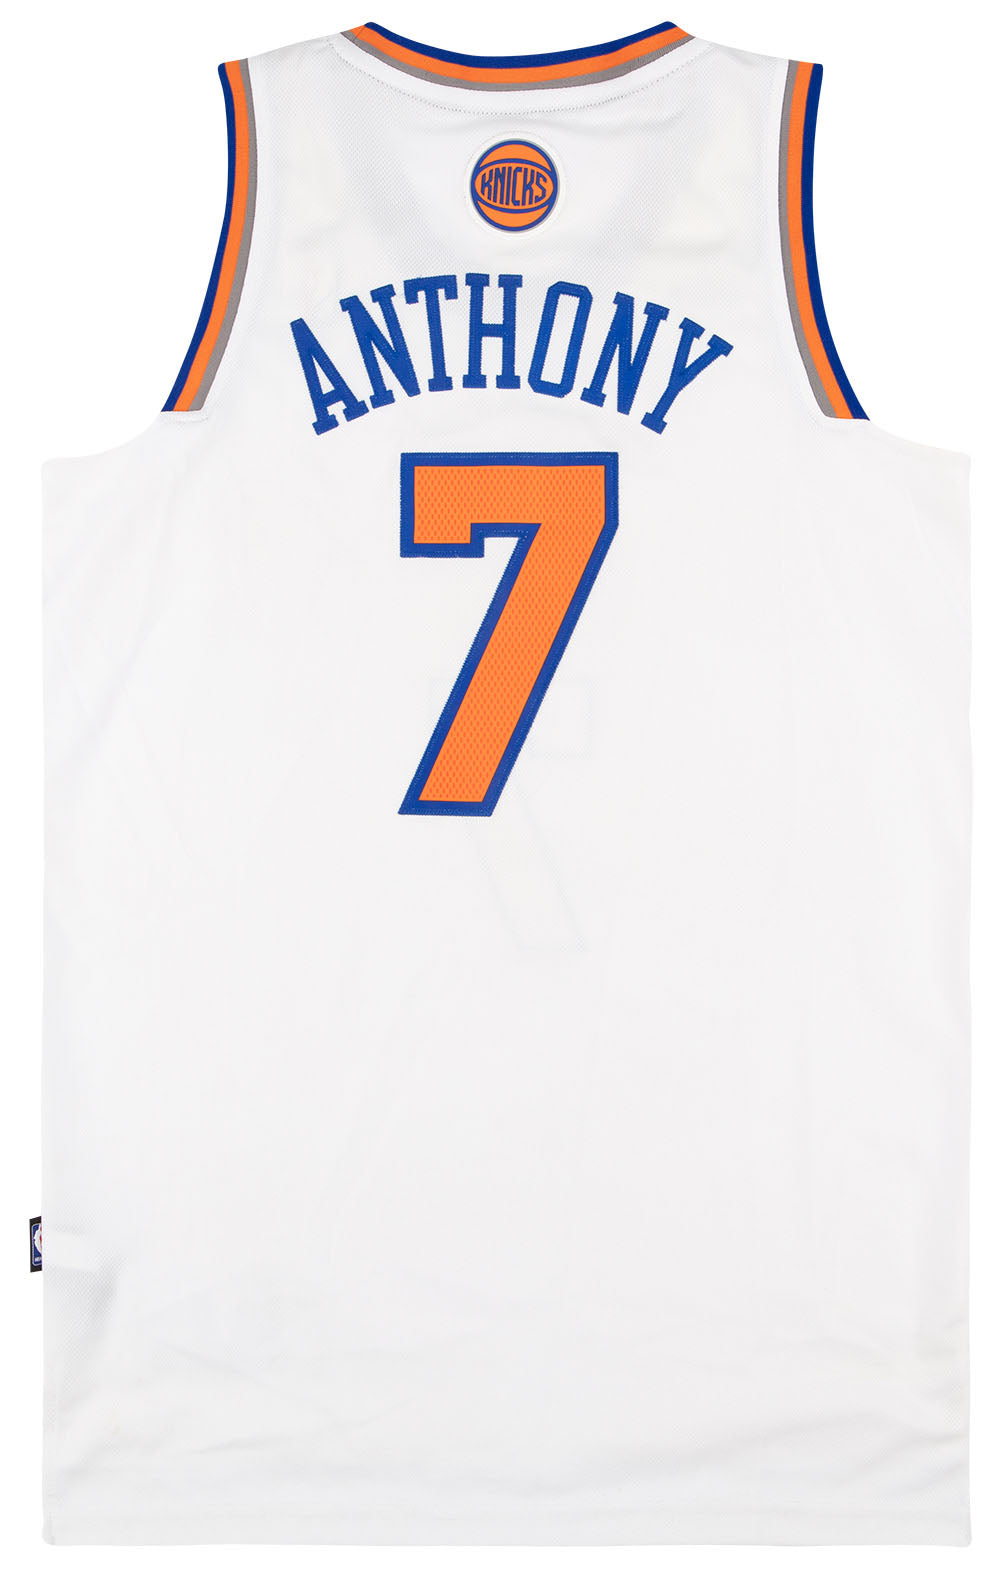 new york knicks anthony jersey